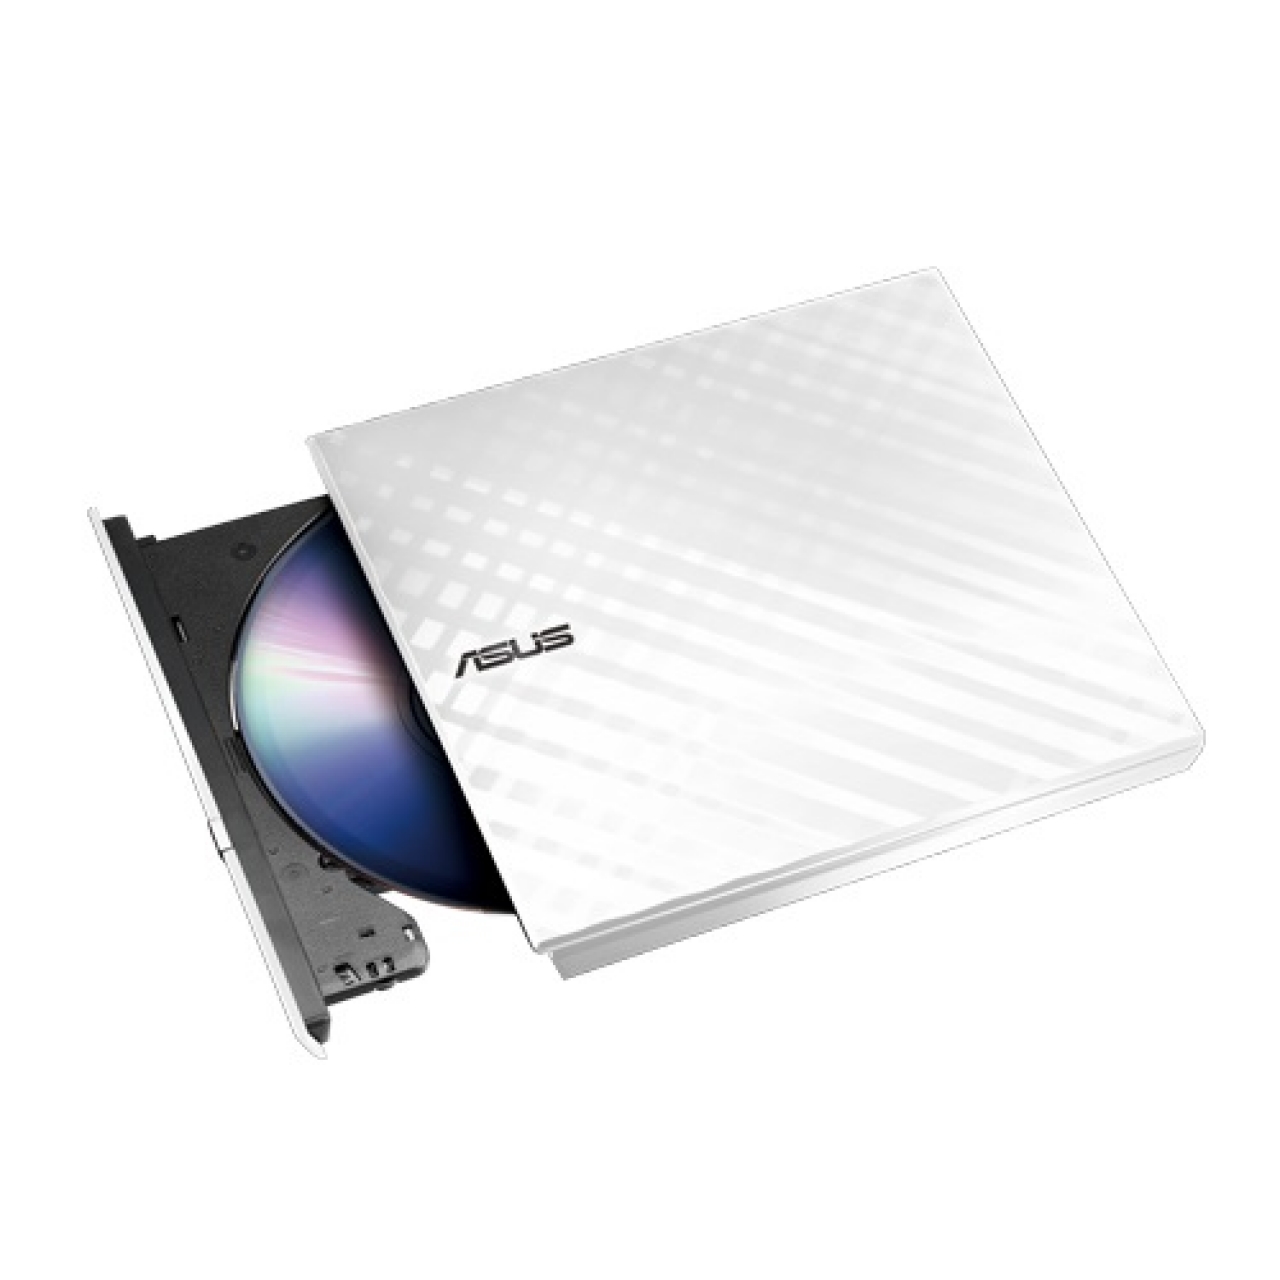 ASUS 8x SDRW-08D2S-U USB 2.0 Slim Harici DVD Yazıcı Beyaz